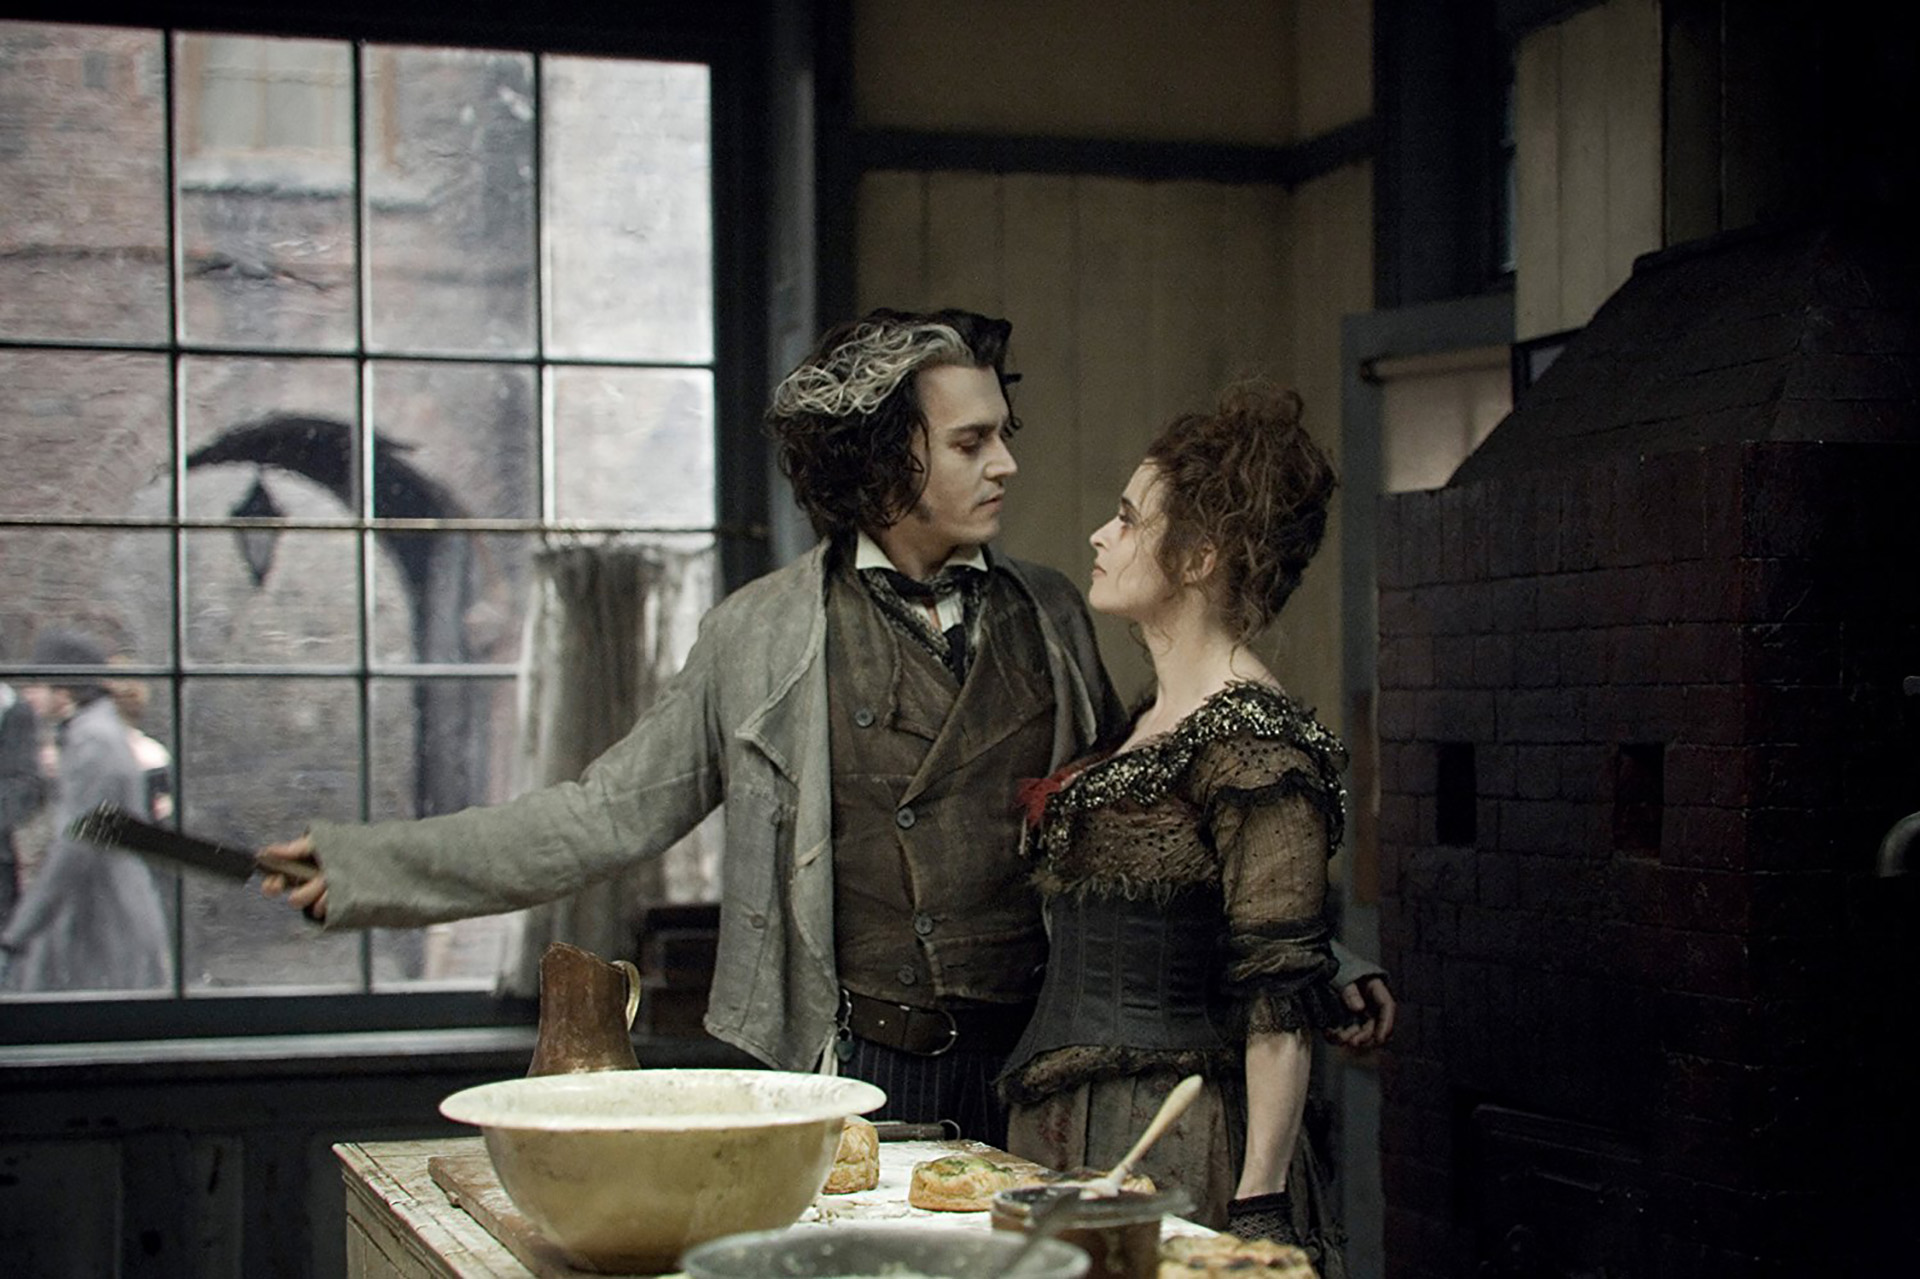 En verdad, en el film la panadera es una mujer, que interpretó la actriz Helena Bonham Carter, como la señora Lovett, socia comercial y cómplice del barbero y asesino en serie Sweeney Todd, personificado por Johnny Depp